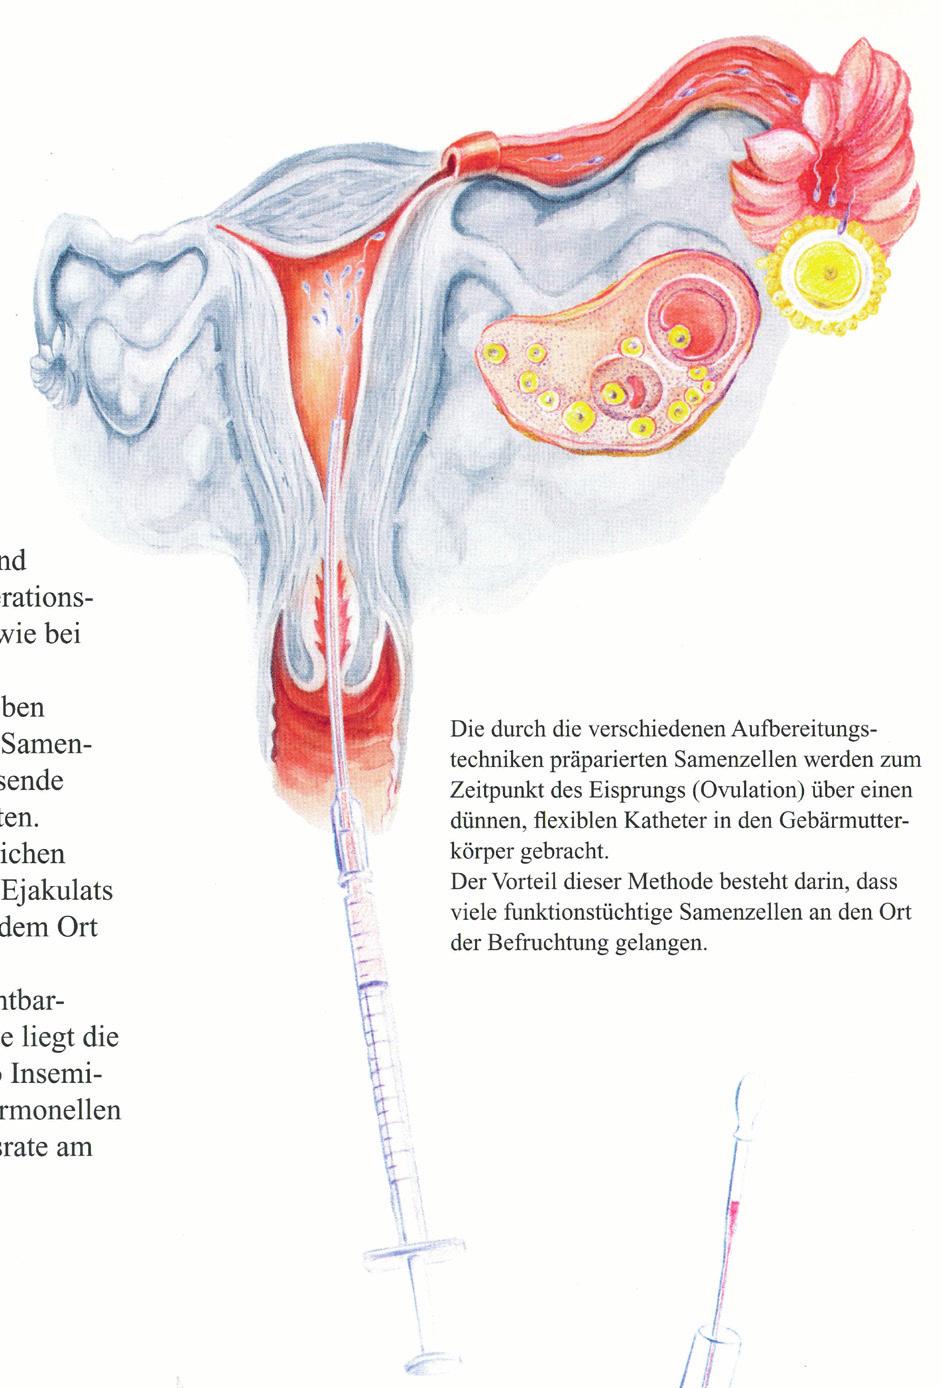 Die lnsemination Unter lnsemination versteht man eine künstliche Samenübertragung in den Gebärmutterkörper (intrauterin) mit Hilfe eines feinen Katheters zum Zeitpunkt des Eisprungs (Ovulation).